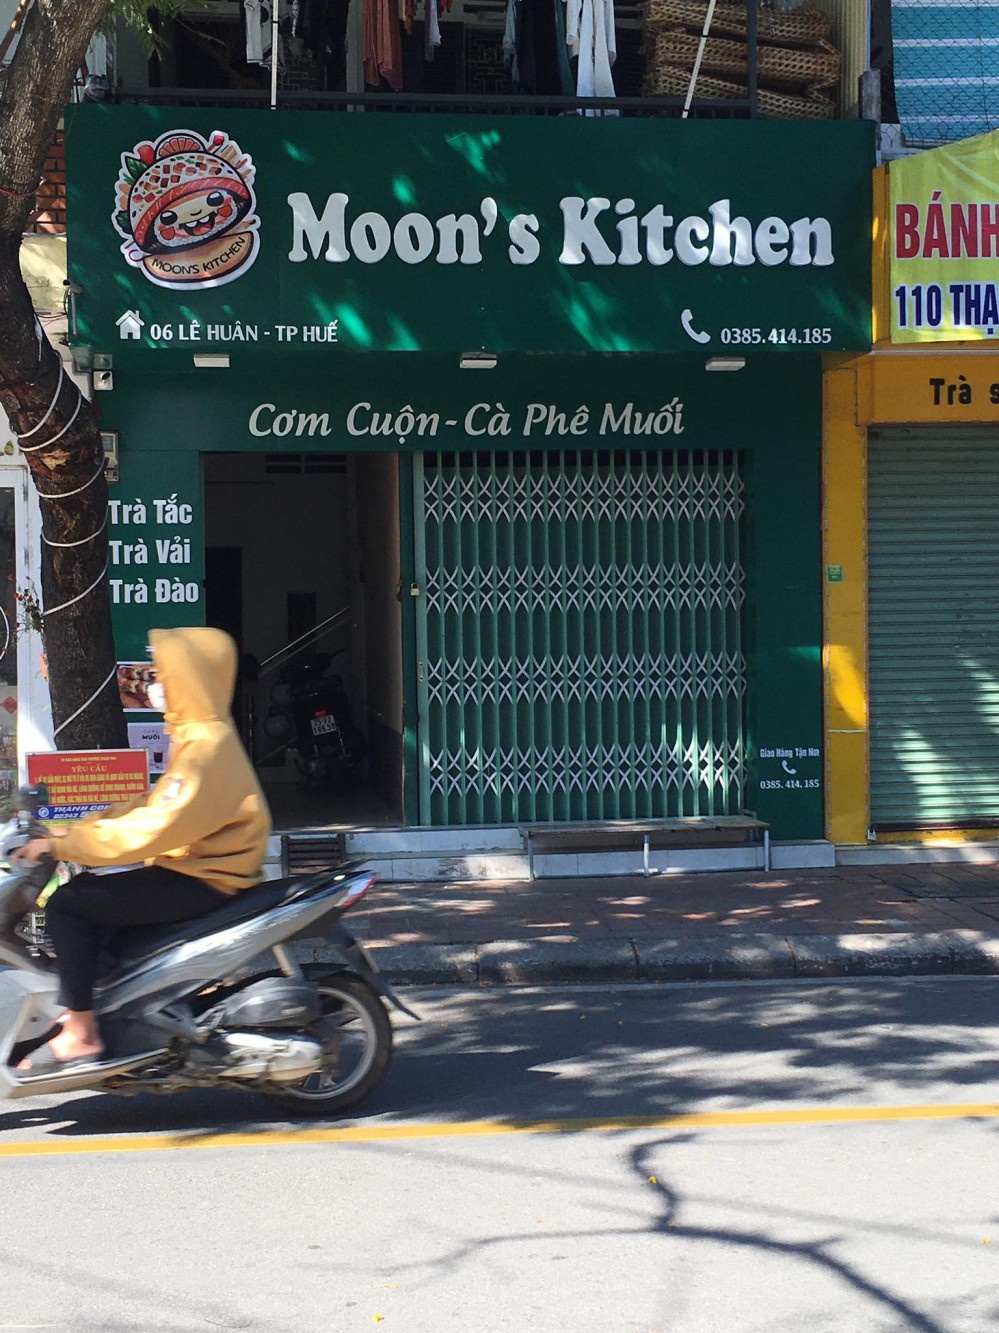 Quán Moon’s Kitchen